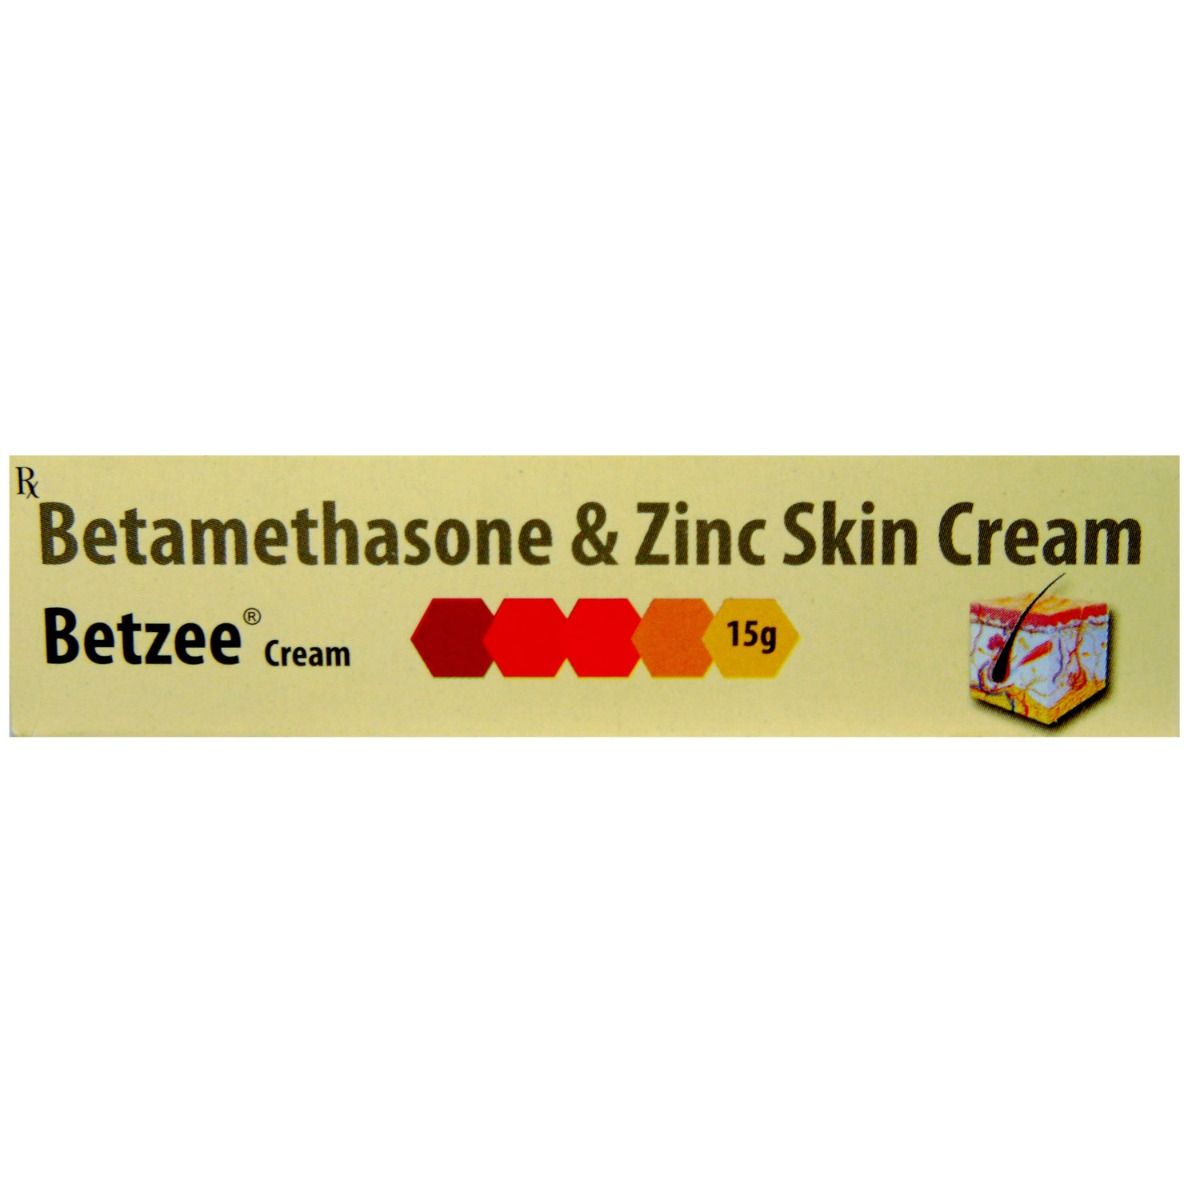 Betzee - GM Cream